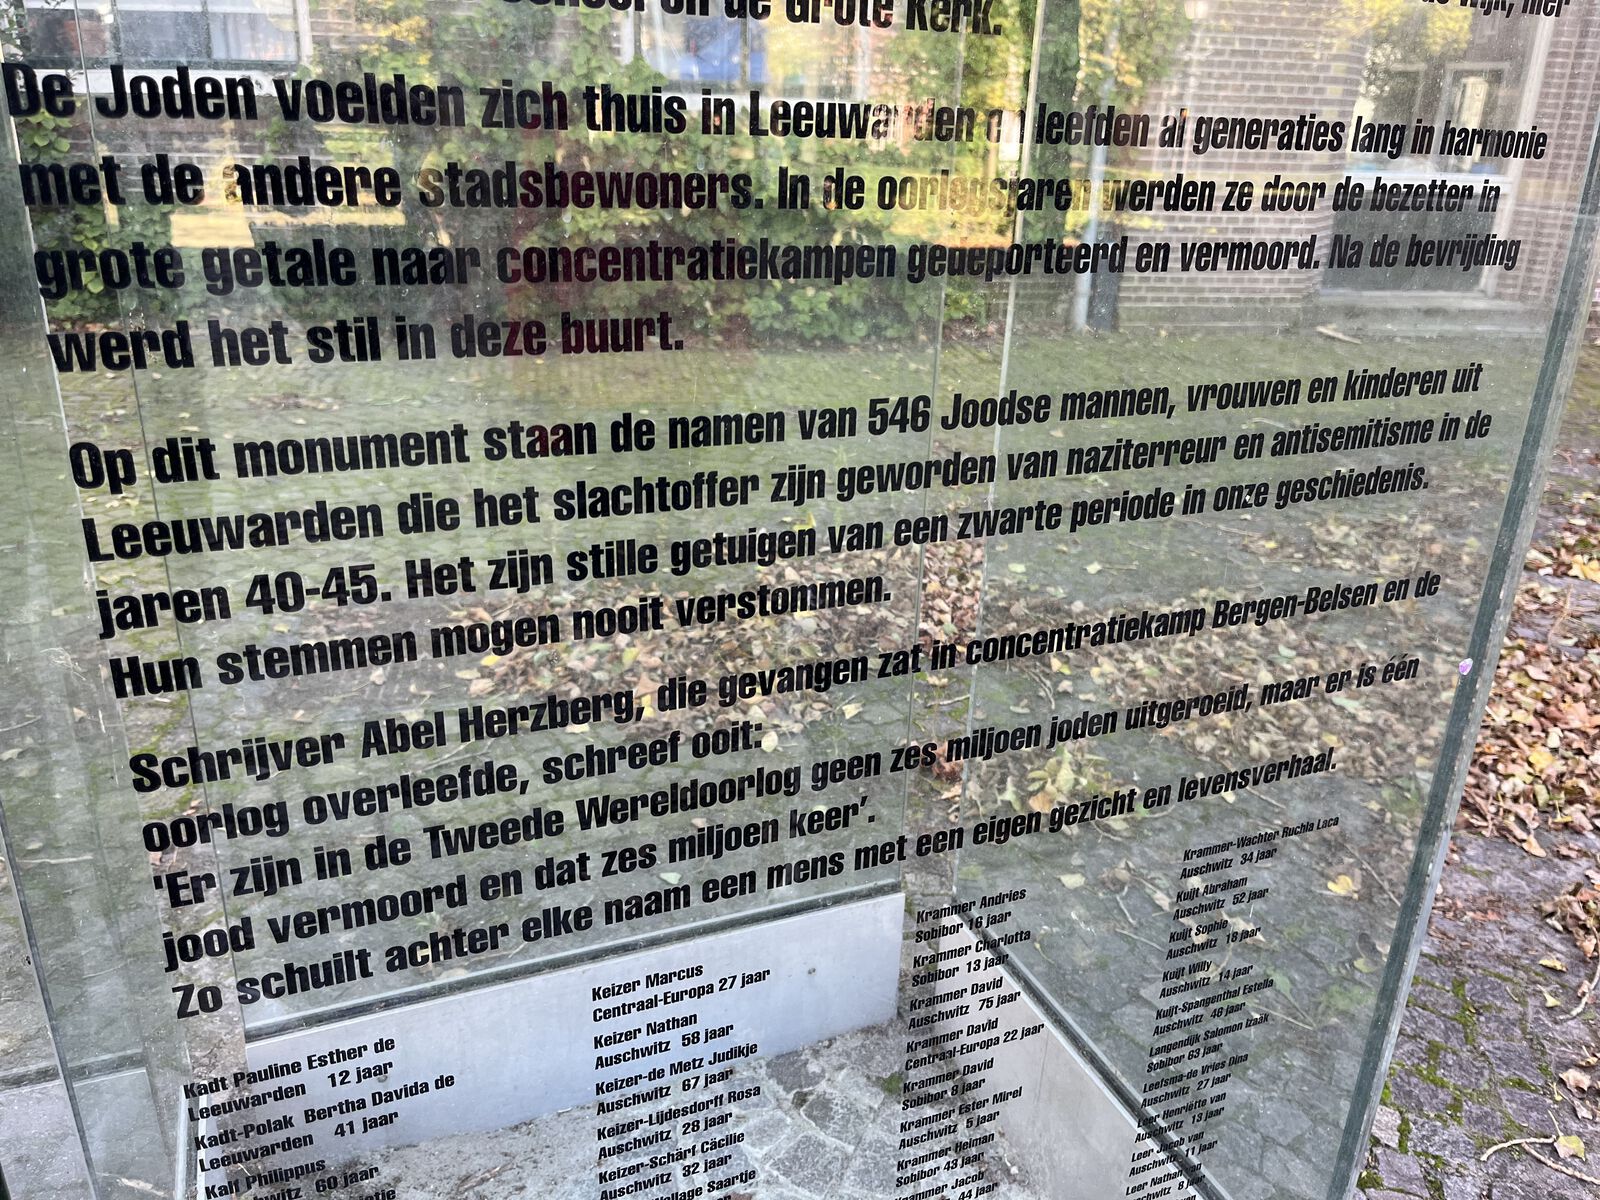 Namenlijst Joods monument in Leeuwarden